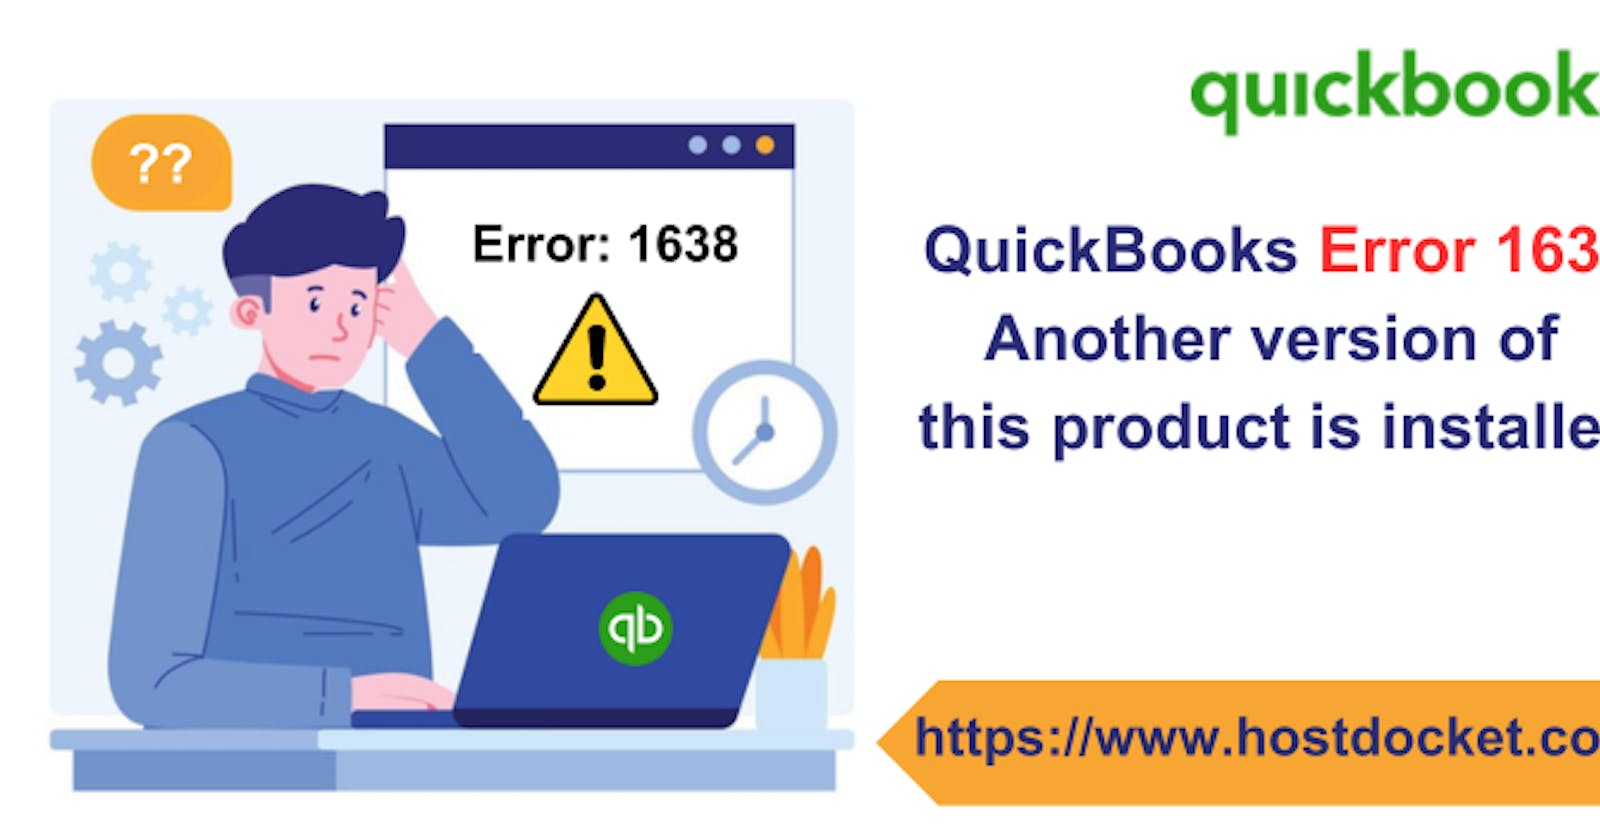 How to Rectify QuickBooks Error 1638?